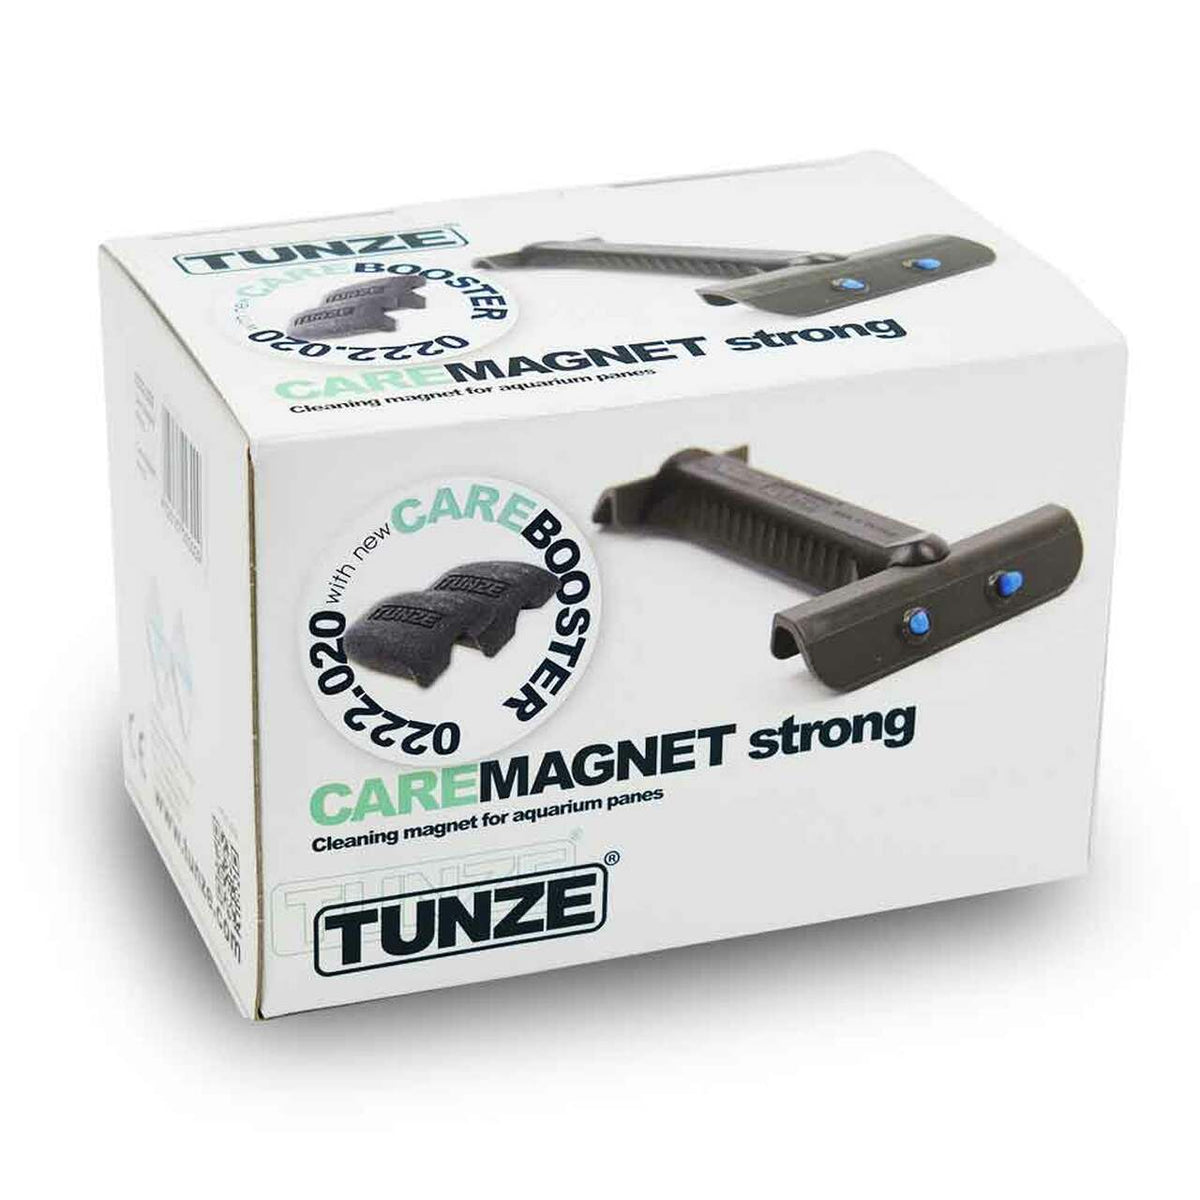 Tunze Care Magnet Strong 0222.020 Aquarium Algae Cleaner with Care